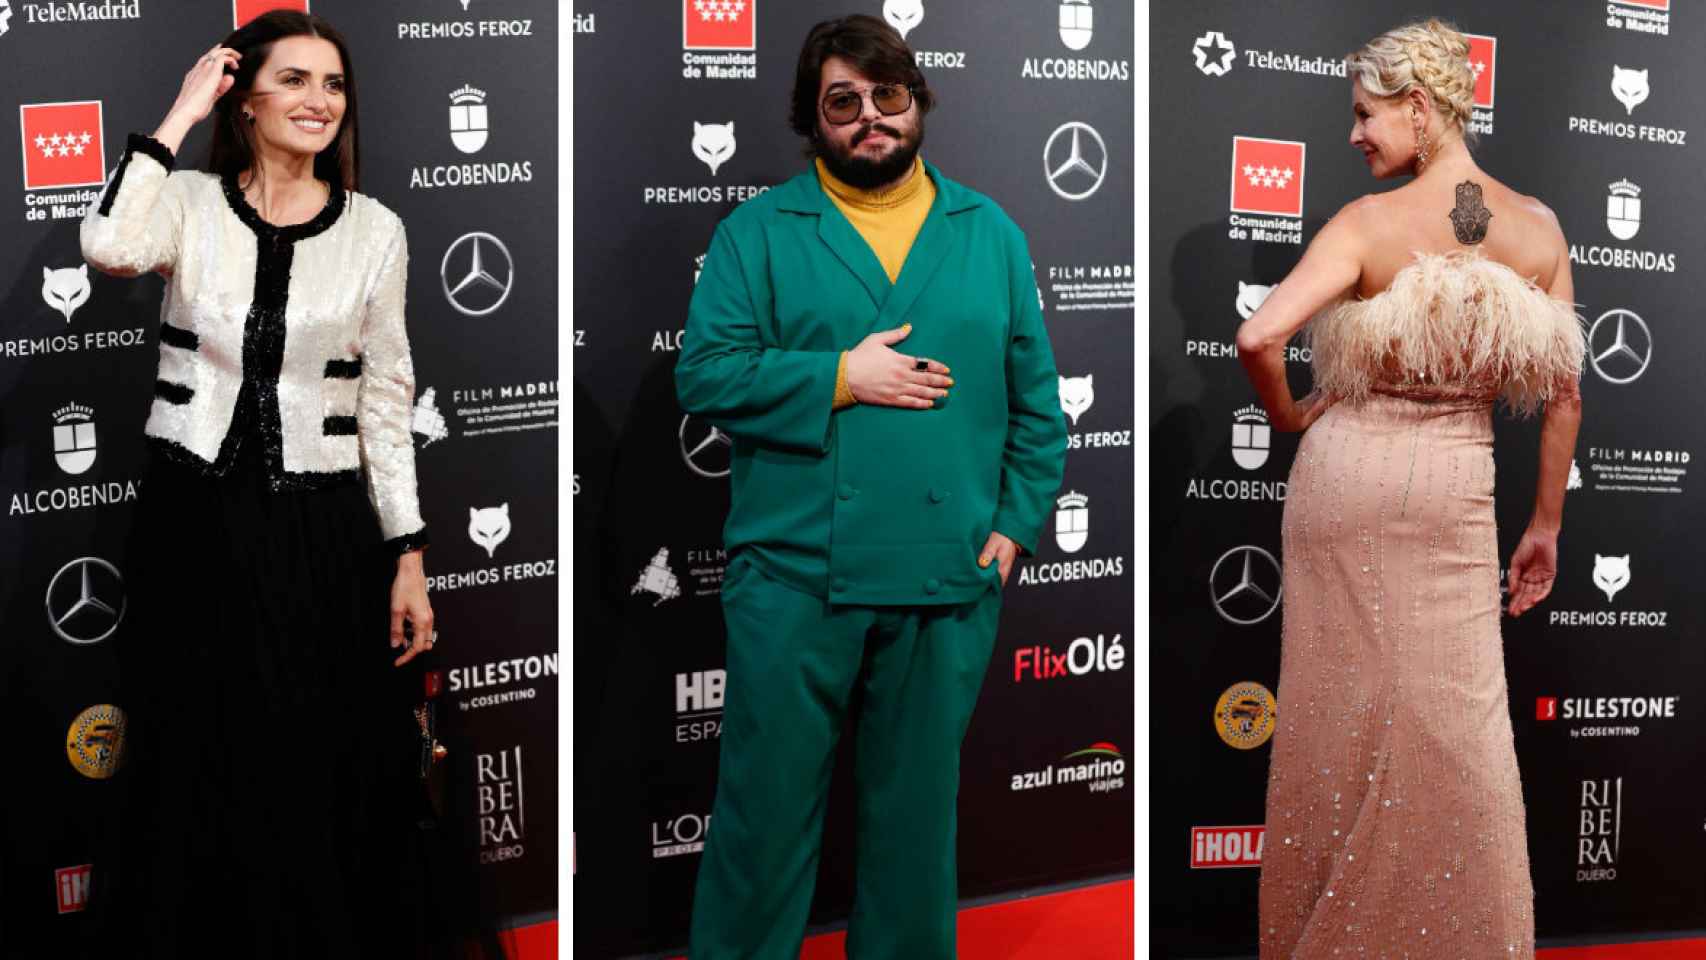 De Penélope Cruz a X: la elegante alfombra roja de los Premios Feroz 2020